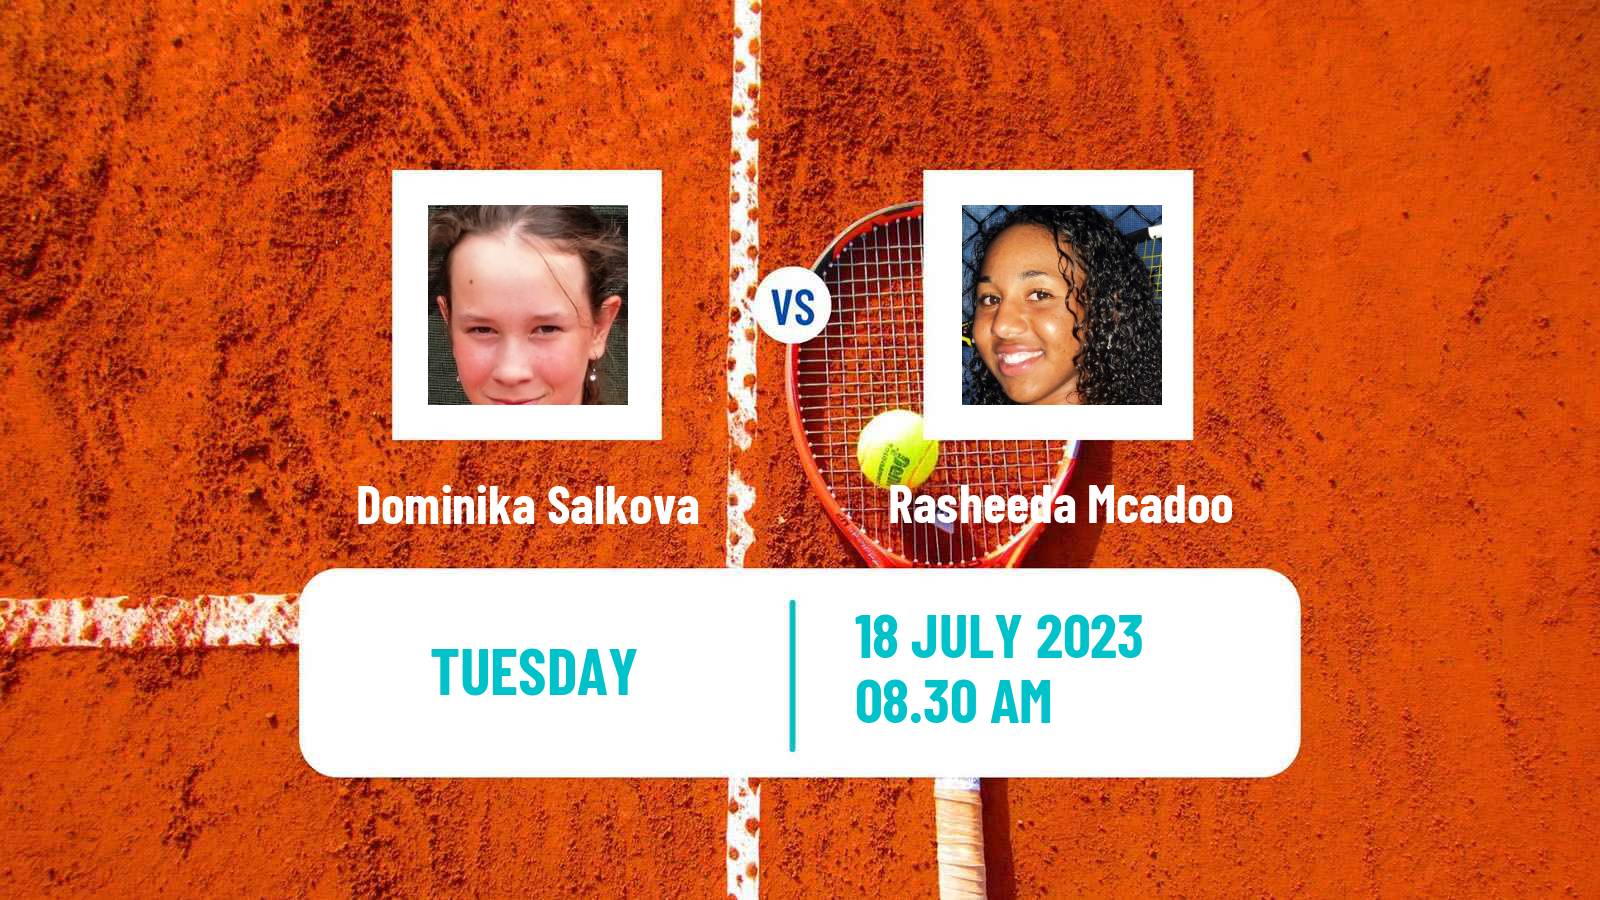 Tennis ITF W40 Porto 3 Women Dominika Salkova - Rasheeda Mcadoo